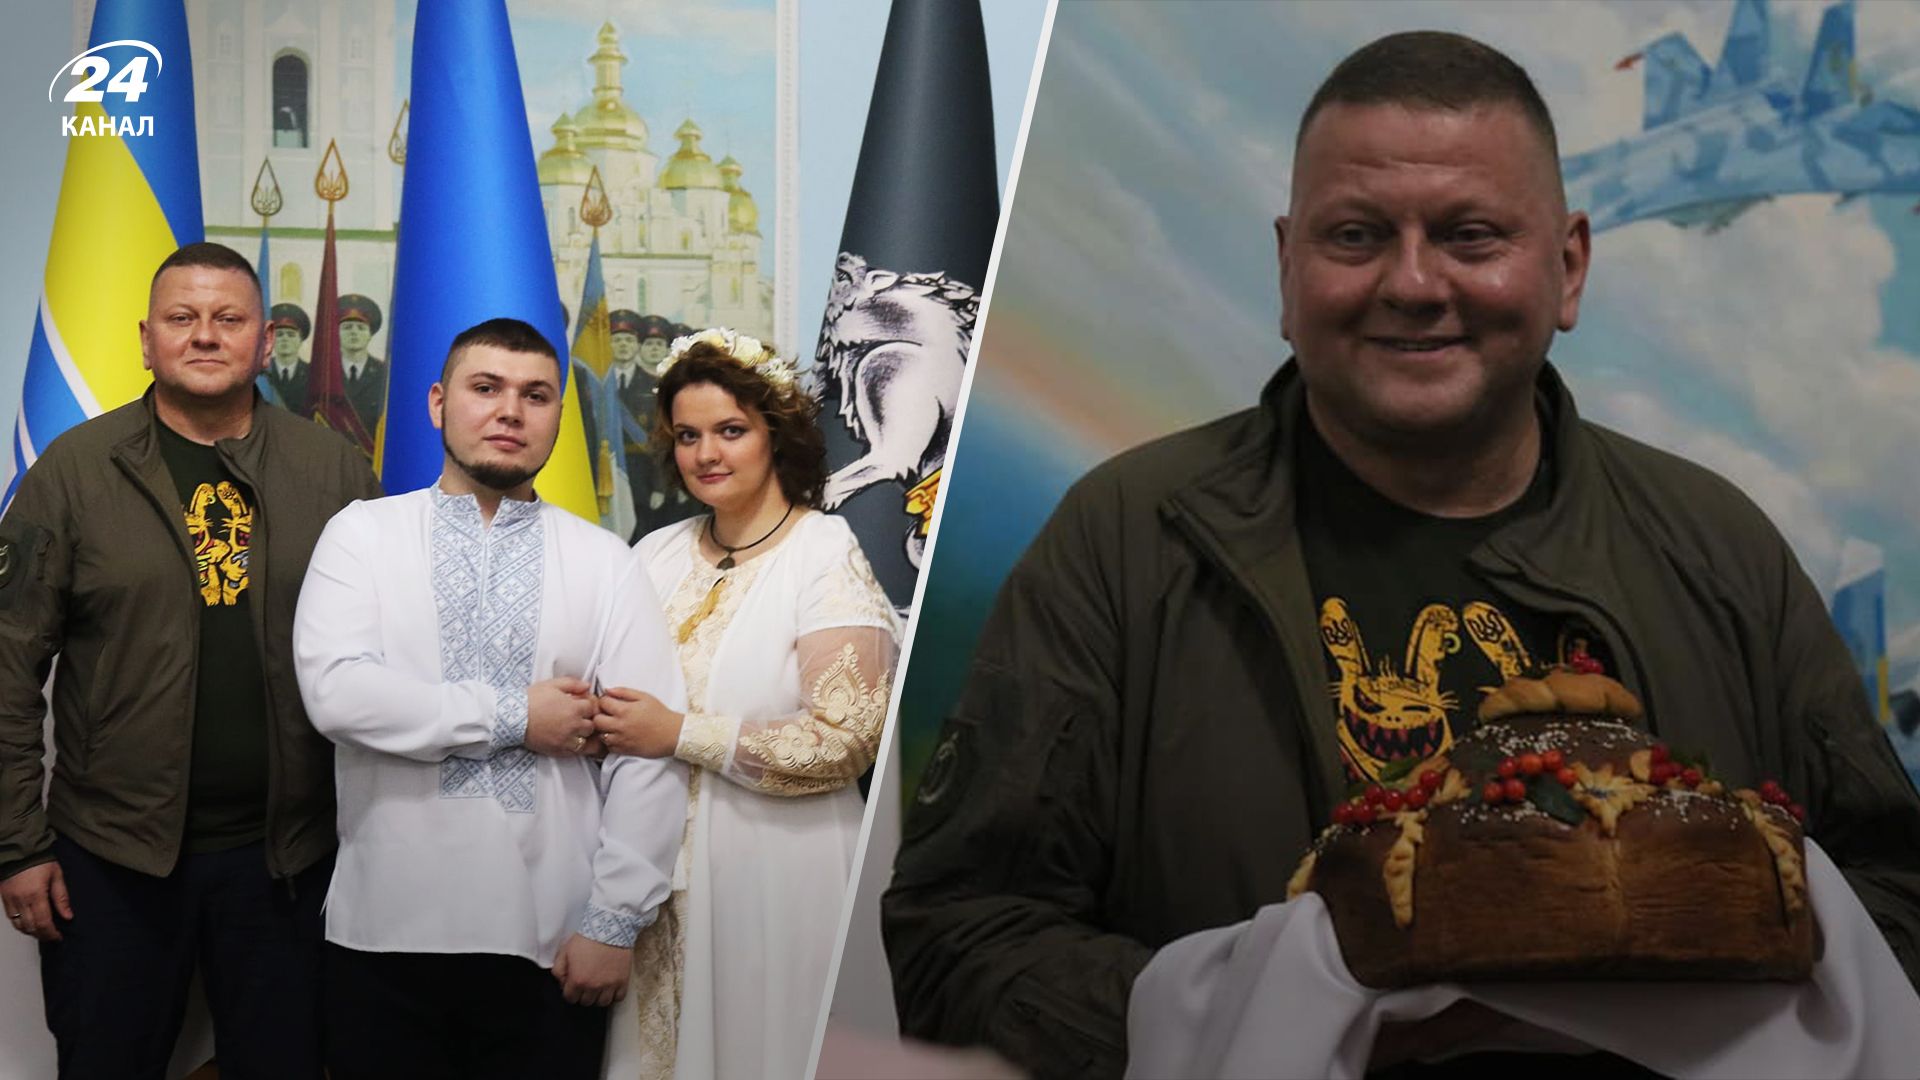 Поощрение за хорошую службу: как Залужный посетил свадьбу обычного украинского воина - 24 Канал